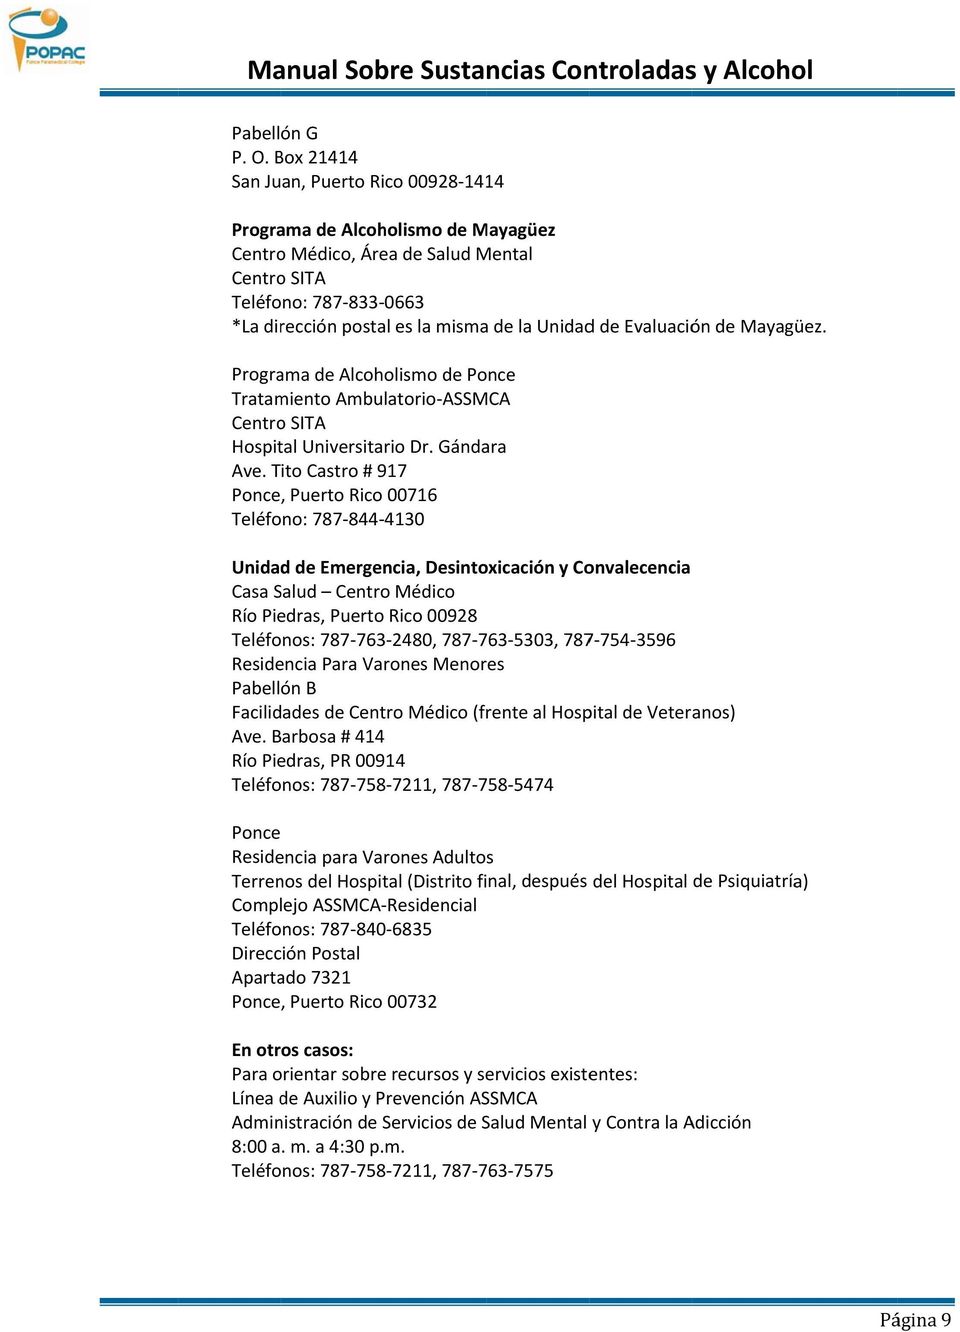 Evaluación de Mayagüez. Programa de Alcoholismo de Ponce Tratamiento Ambulatorio ASSMCA Centro SITA Hospital Universitario Dr. Gándara Ave.